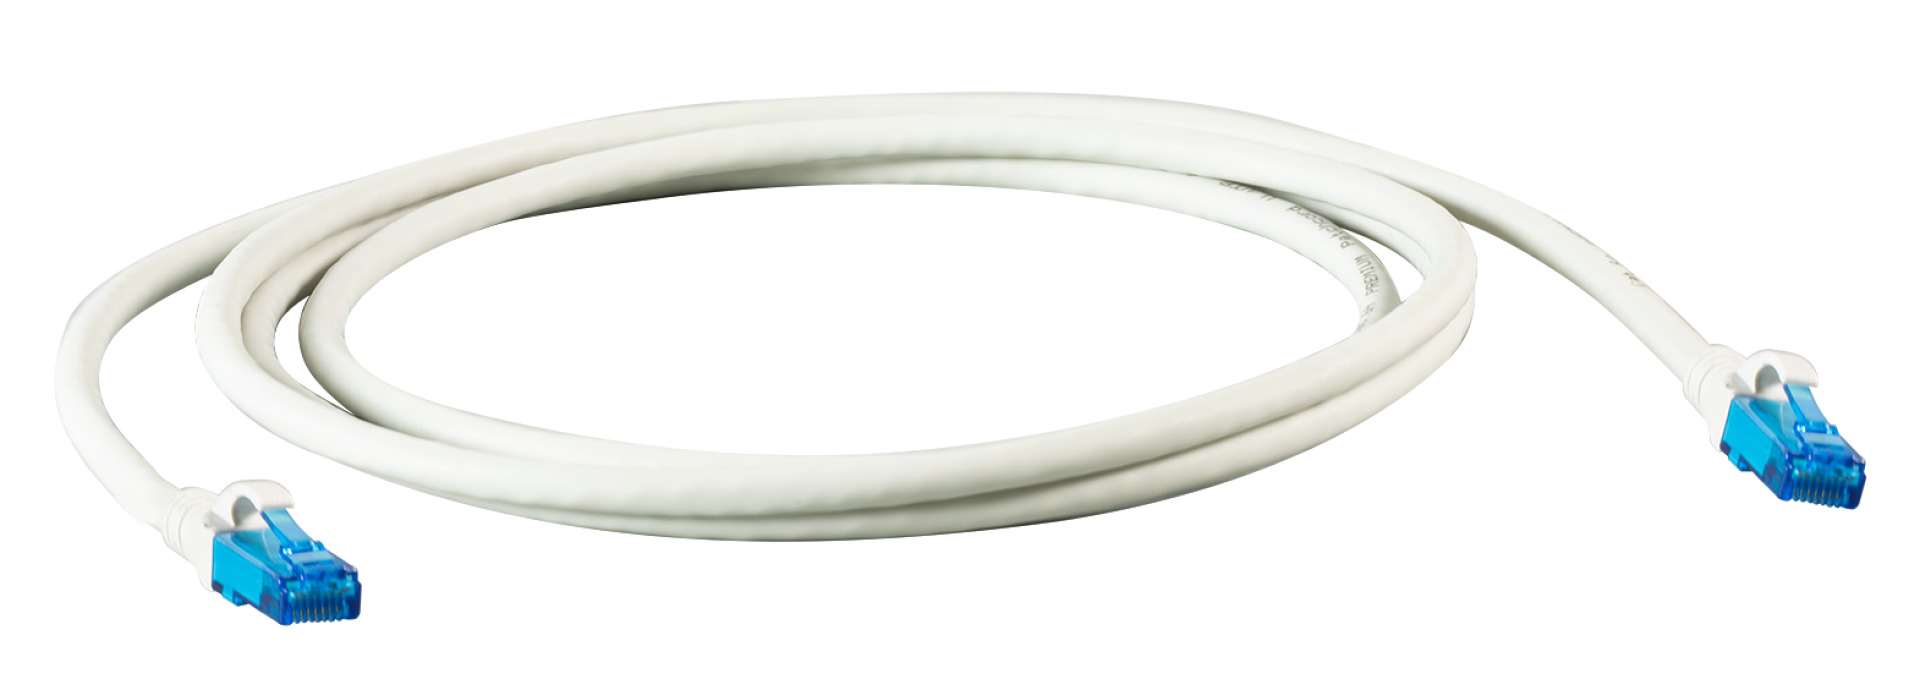 INFRALAN® RJ45 Patch cable U/UTP, Cat.6A, LSZH, Premium, 500MHz, 3m, grey